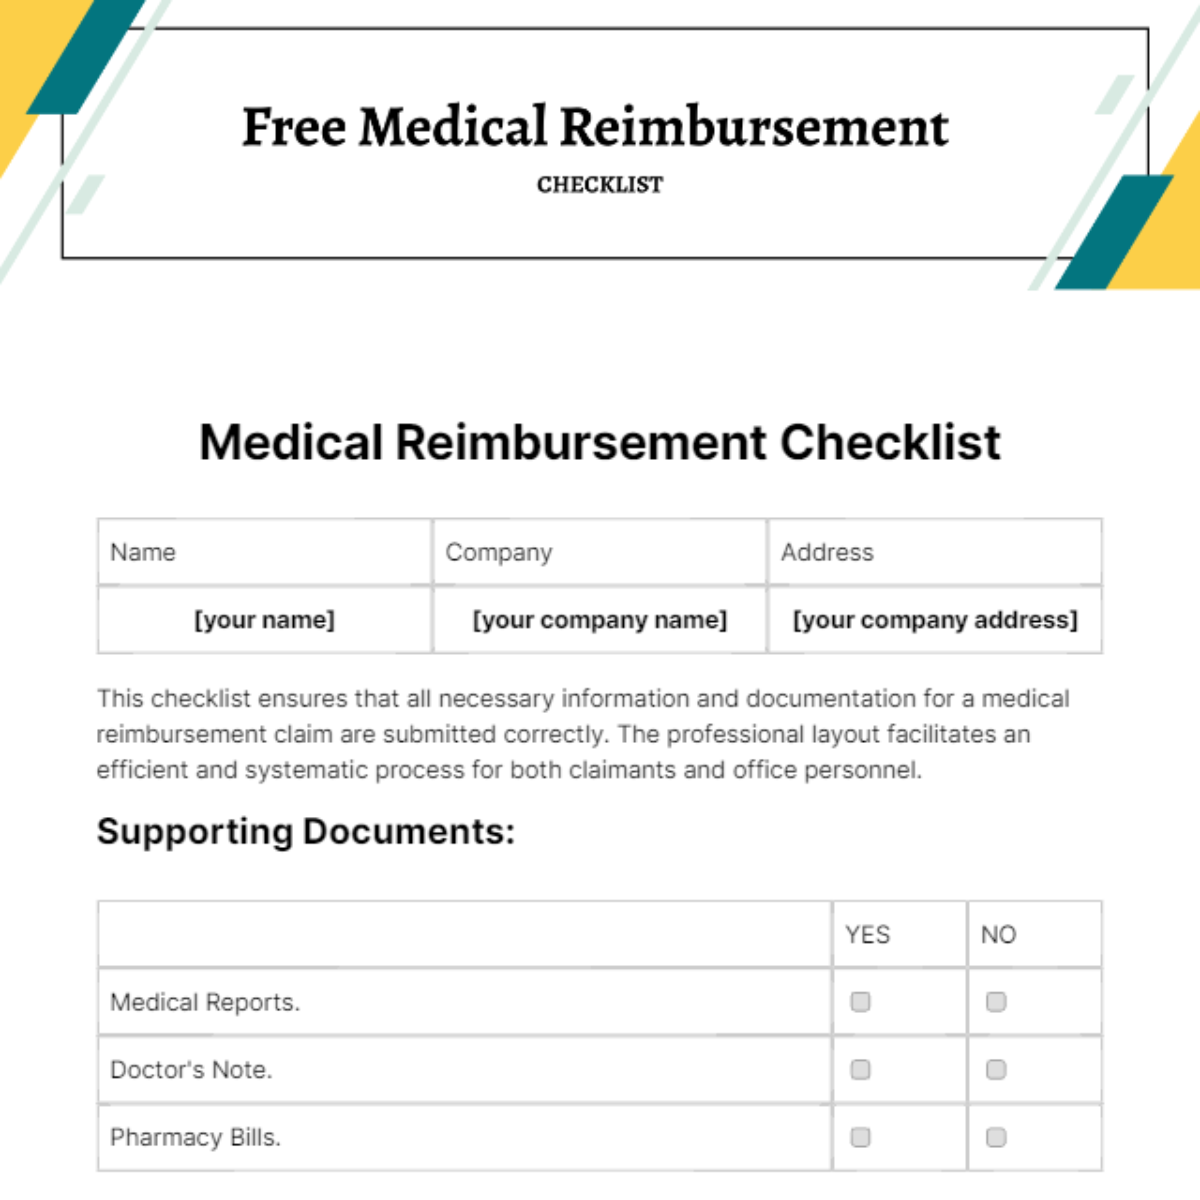 Free Medical Reimbursement Checklist Template